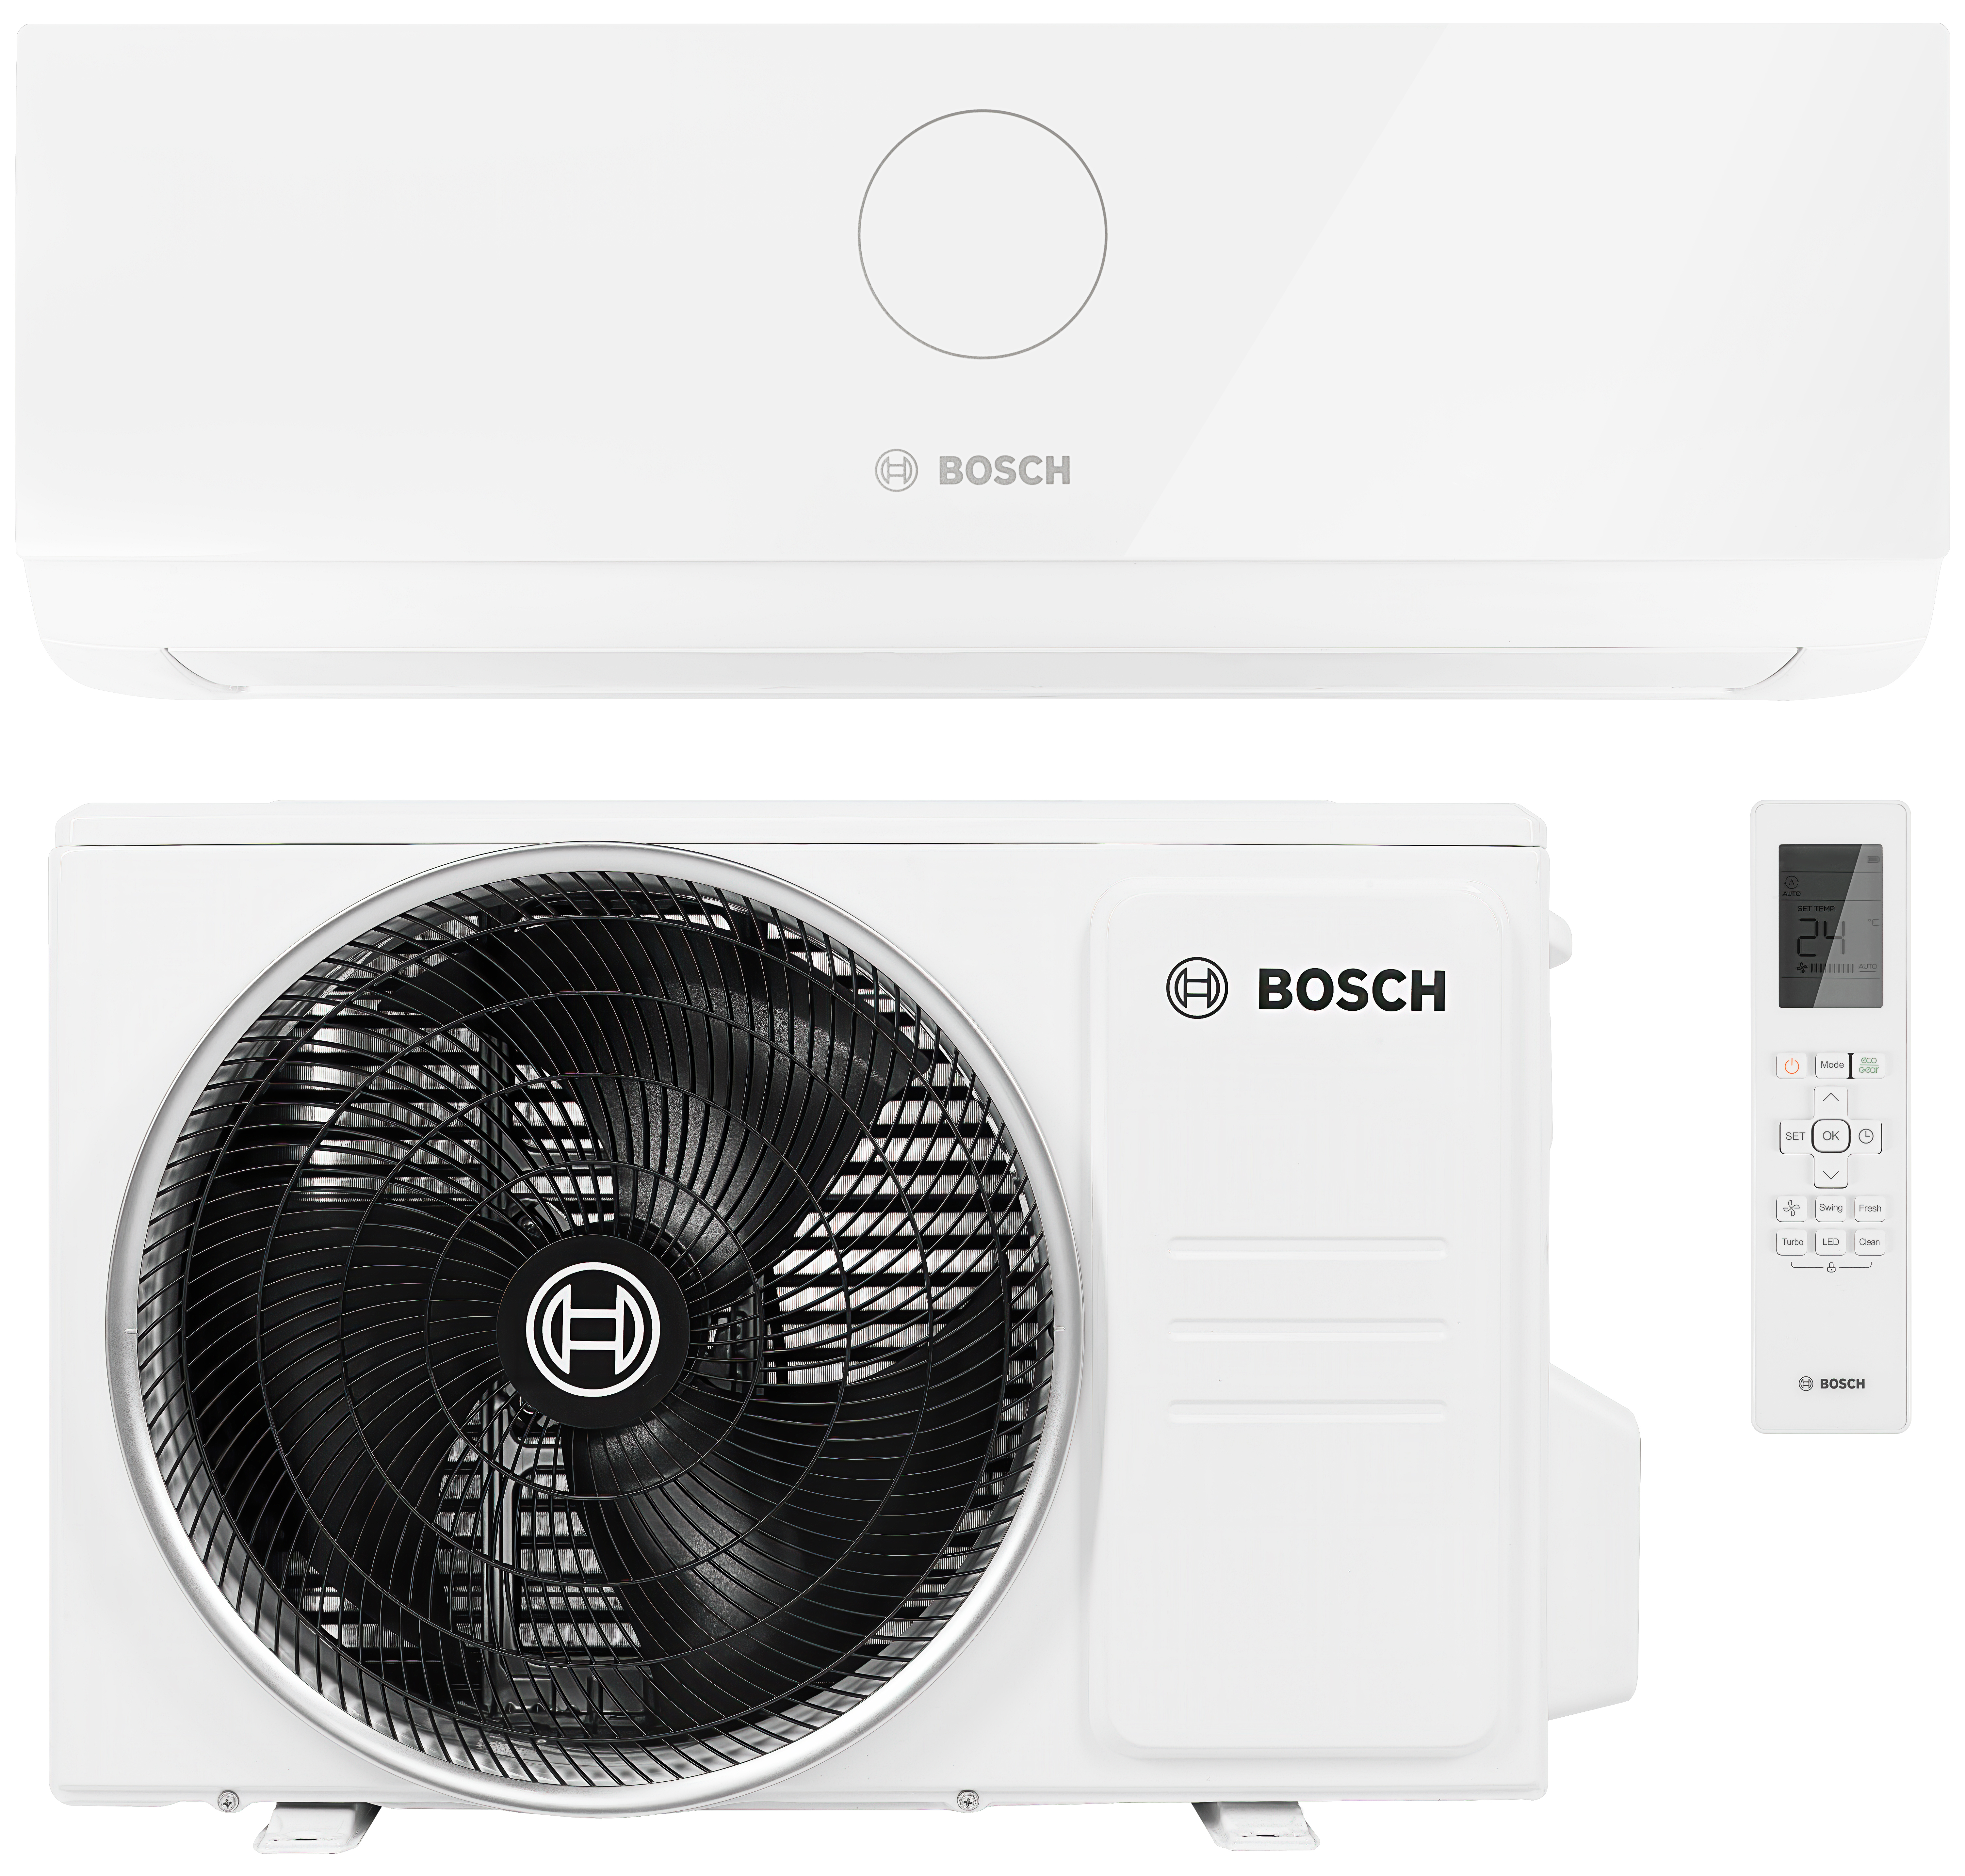 Характеристики тихий кондиционер с ночным режимом Bosch Climate CL3000i 26 E